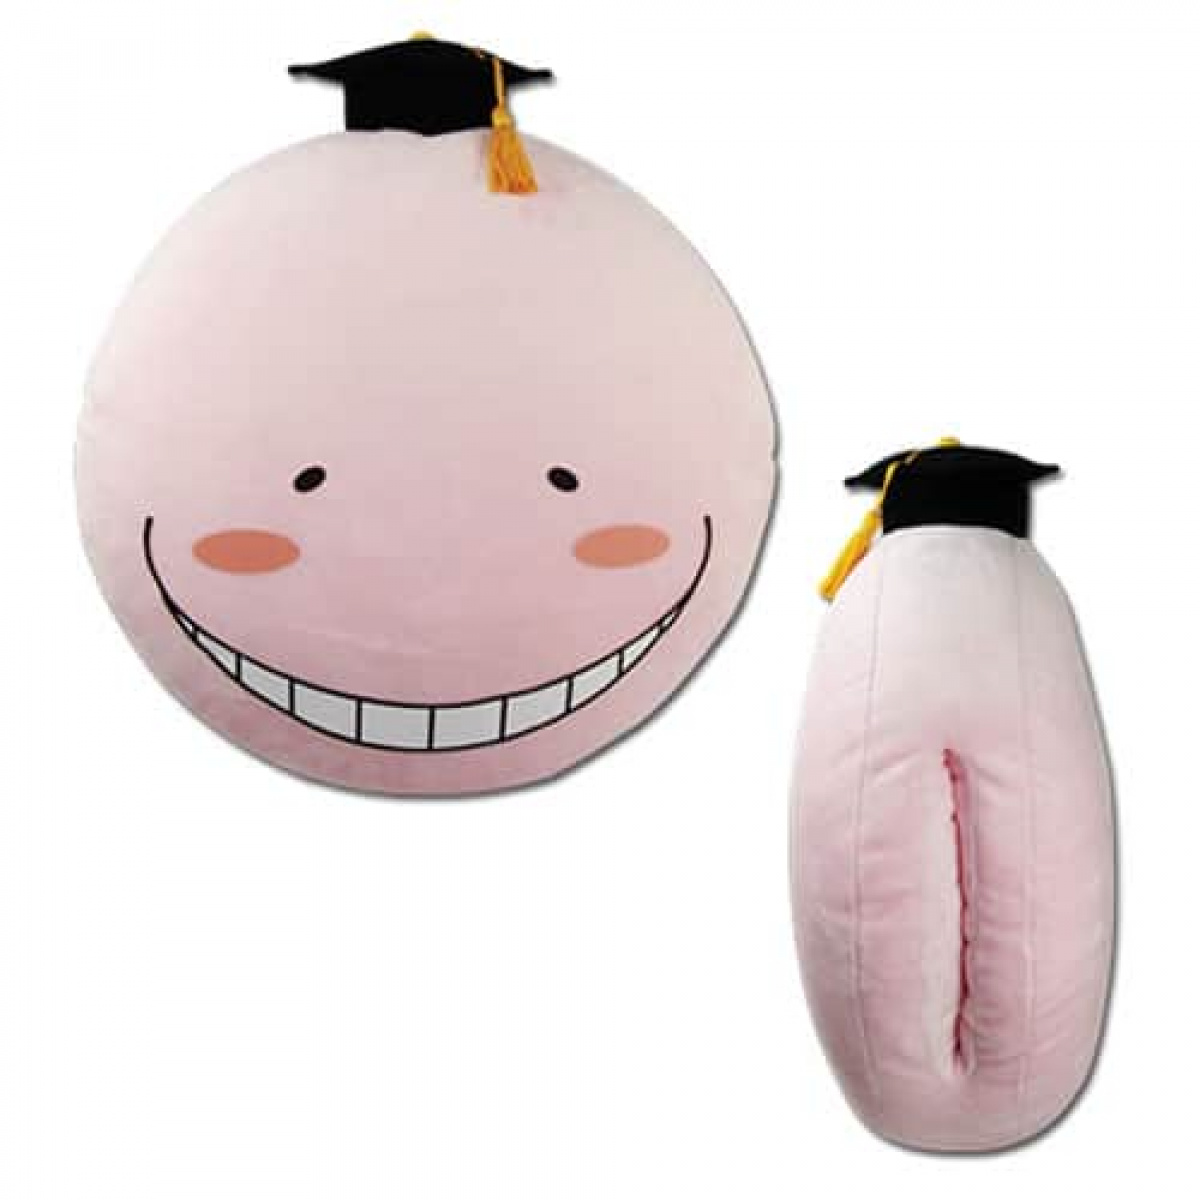 Assassination Classroom Korosensei Relaxed Pink Hand-Warming Pillow